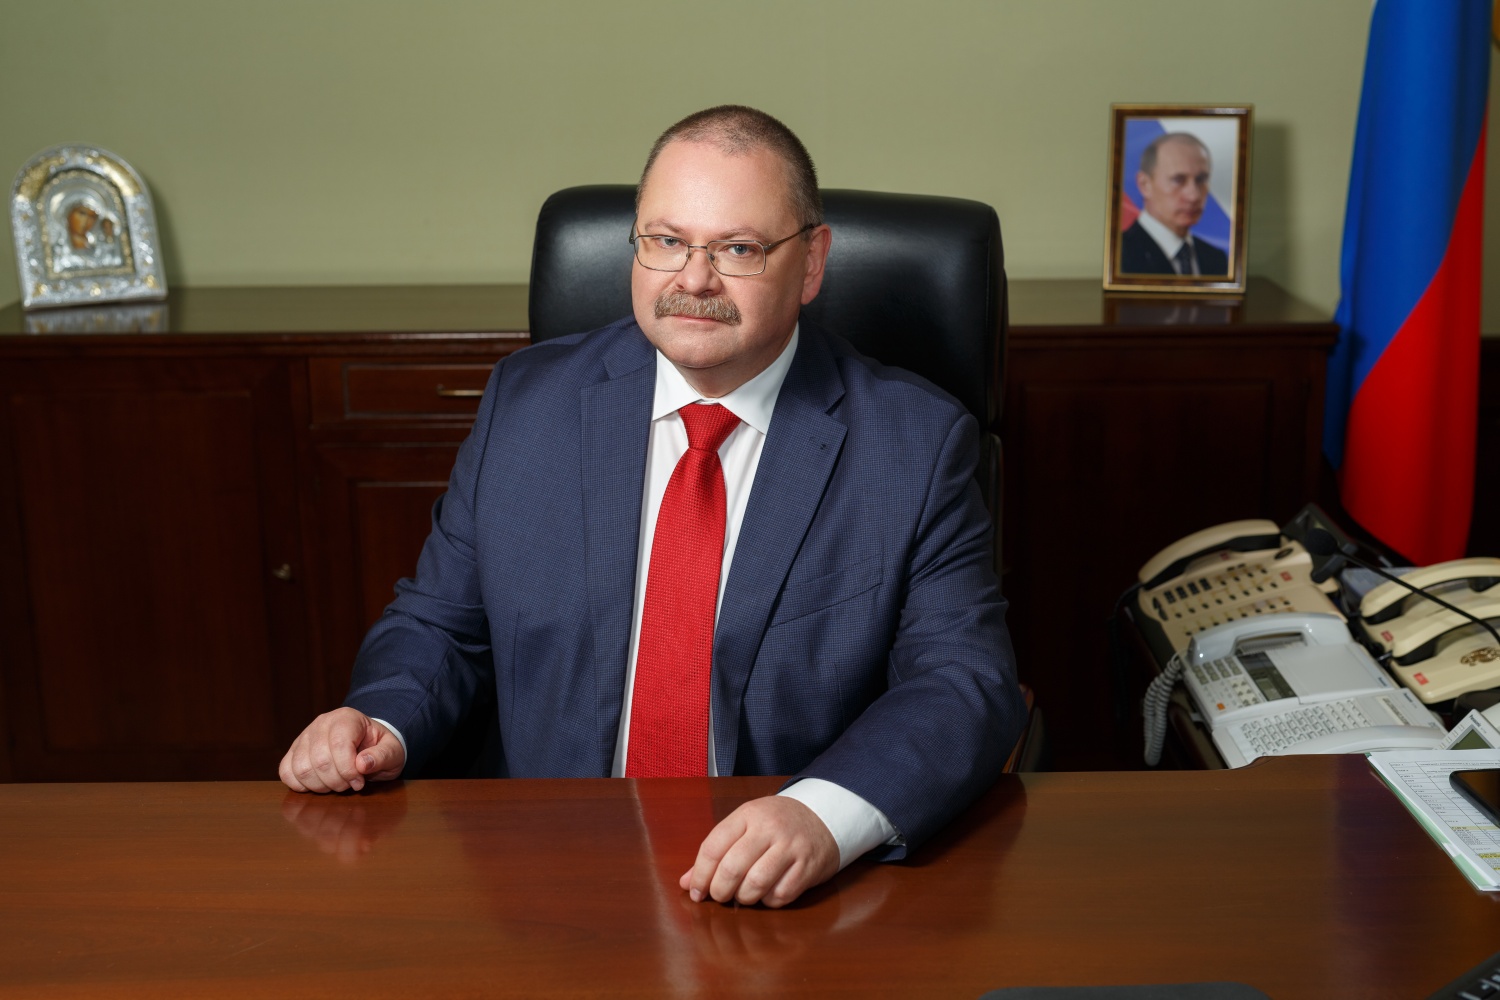 Губернатор Пензенской области Олег Мельниченко награжден Орденом Почета